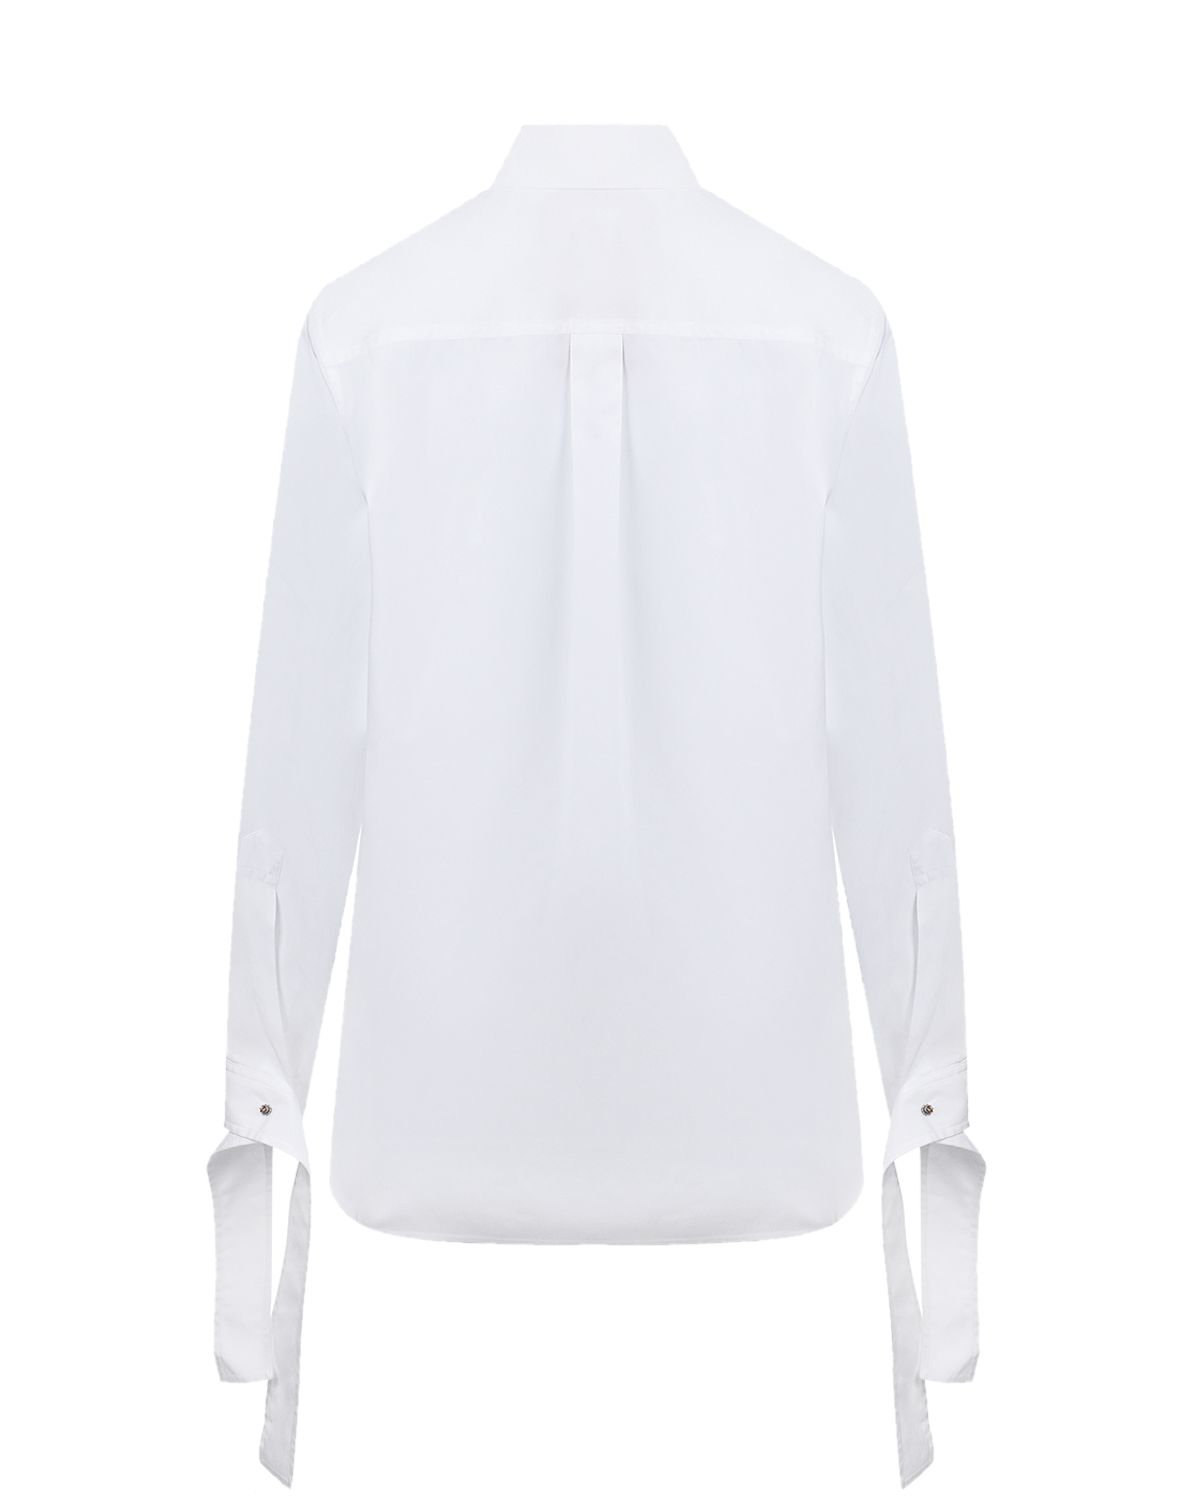 Удлиненная белая рубашка No. 21, размер 42, цвет белый - фото 6